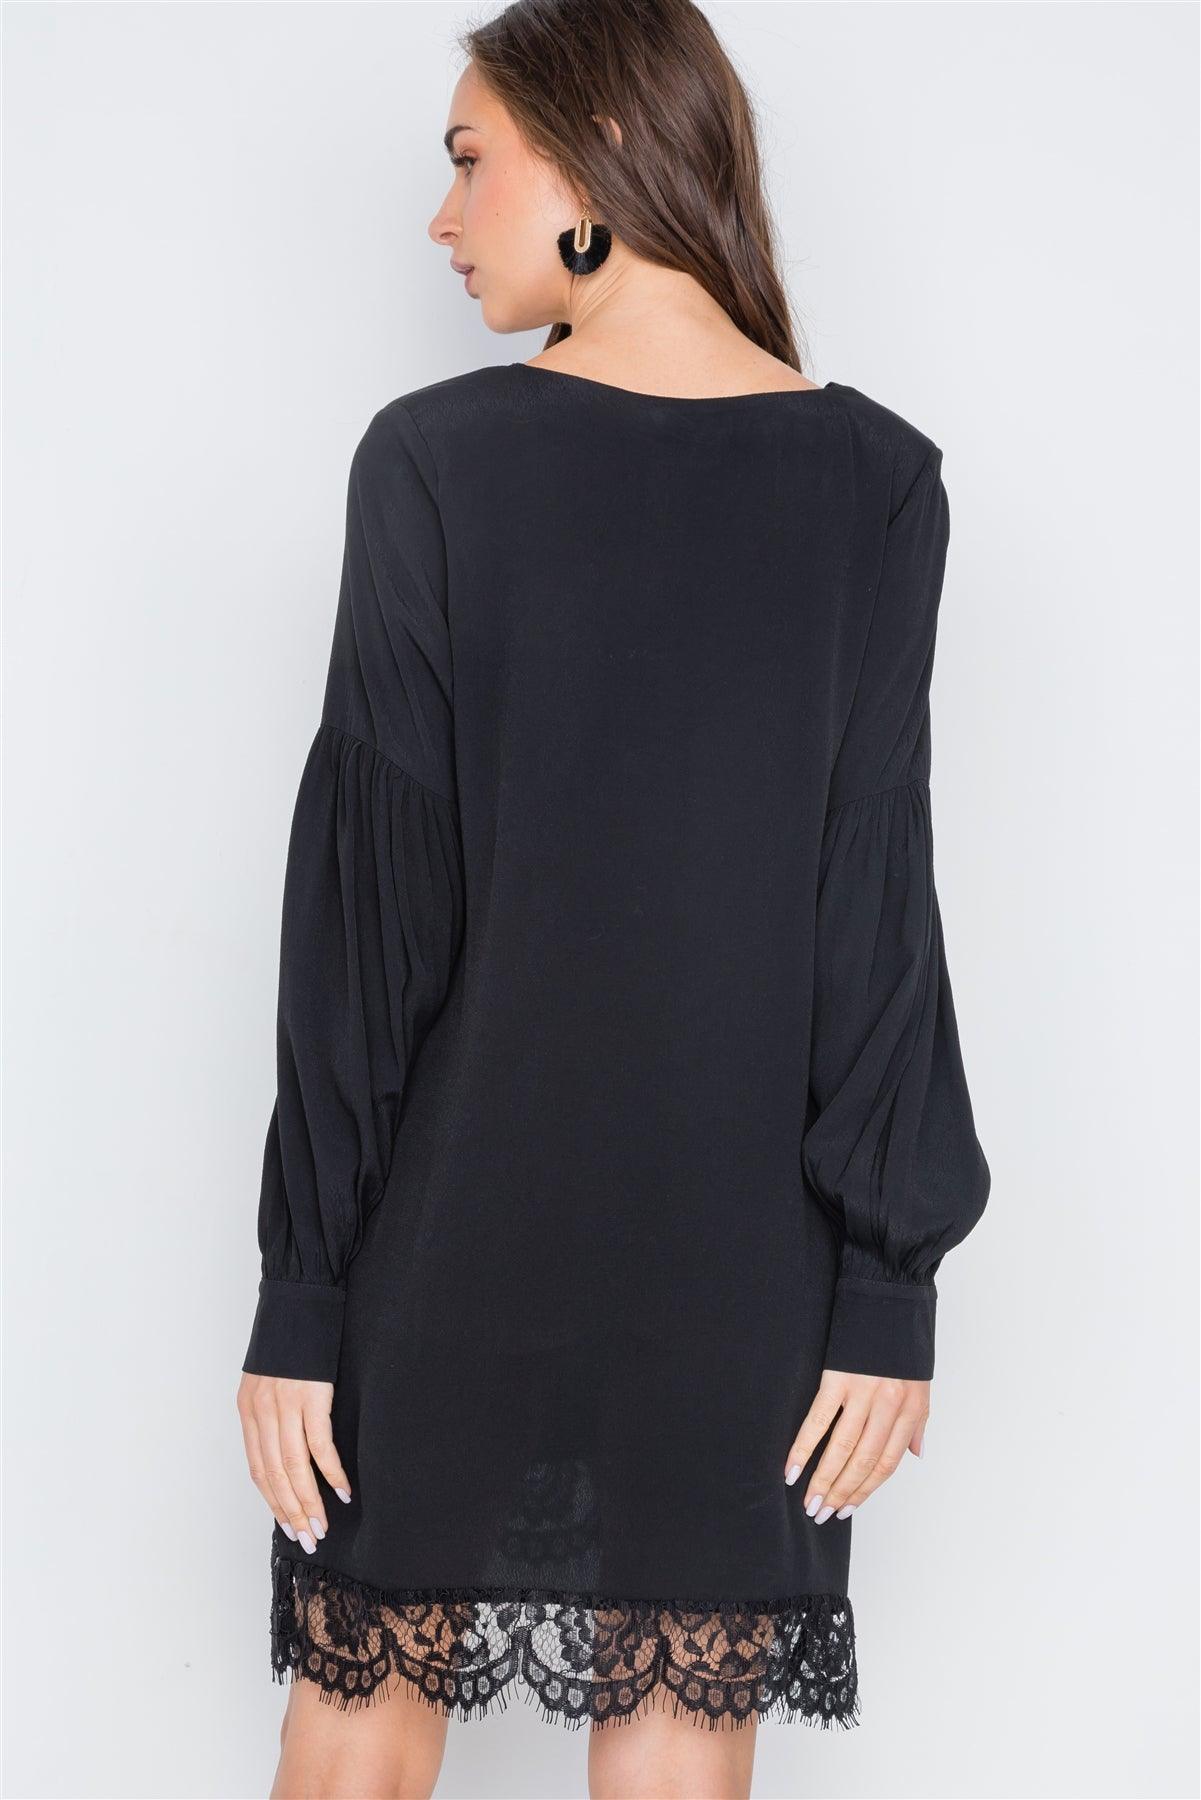 Black Long Sleeve Lace Hem V-Neck Mini Dress /2-2-2